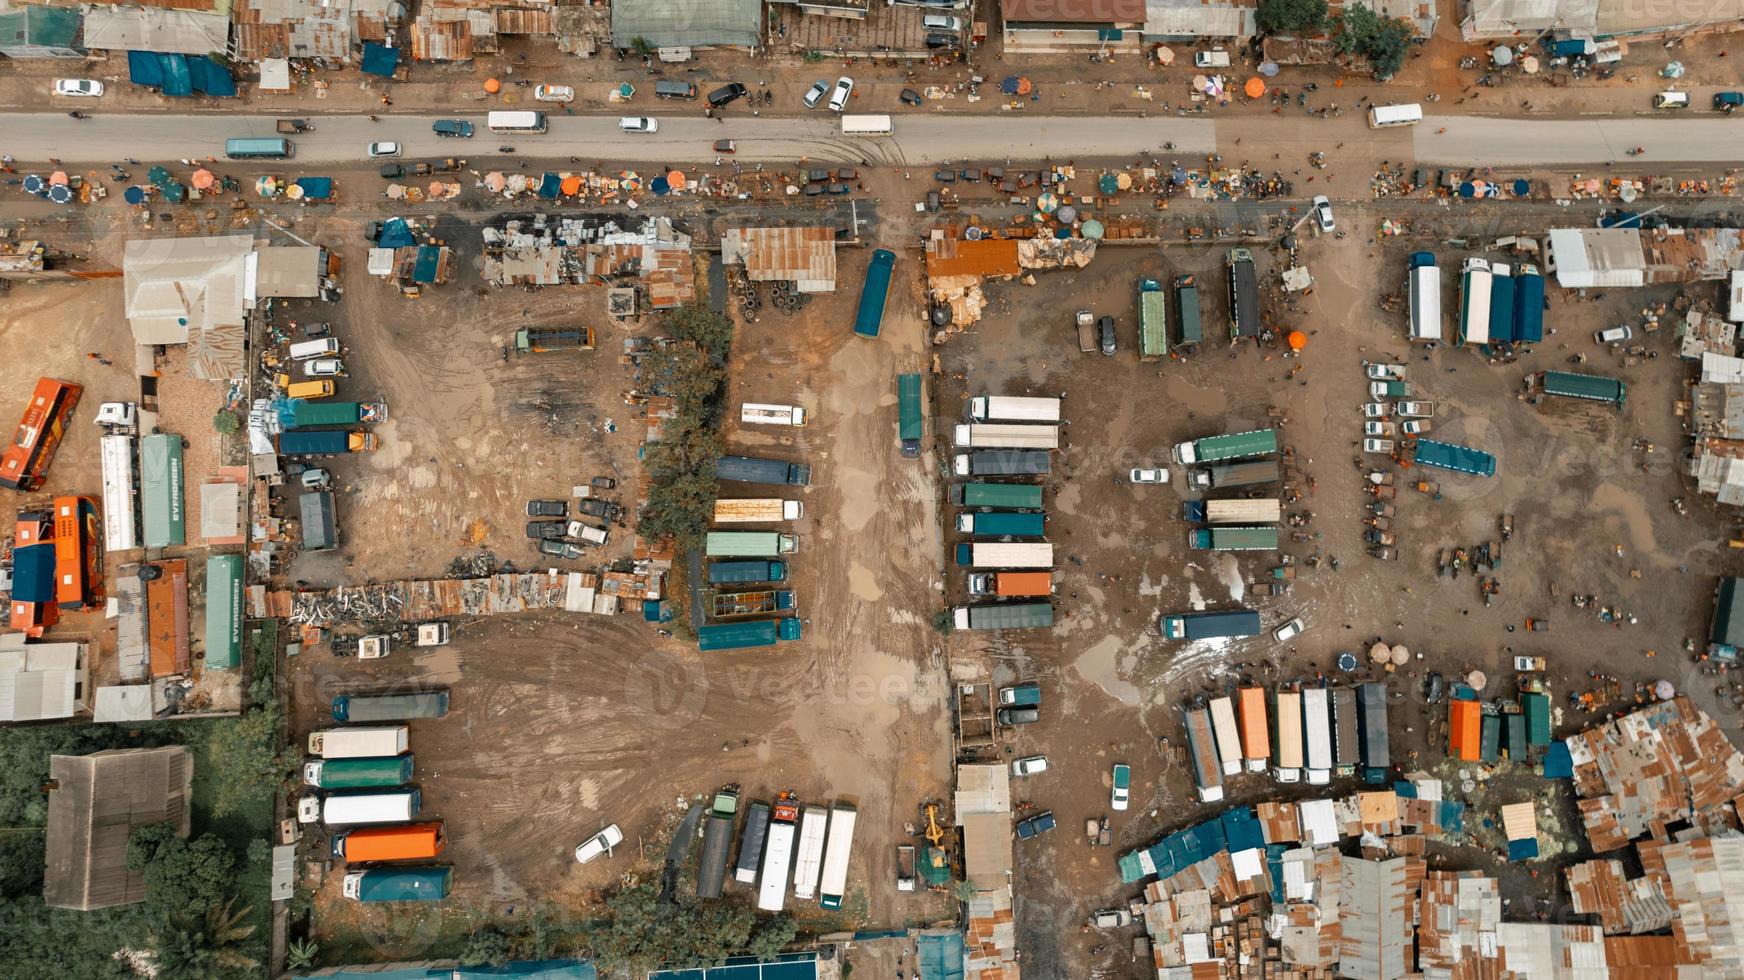 vista aérea de la zona industrial de dar es salaam foto